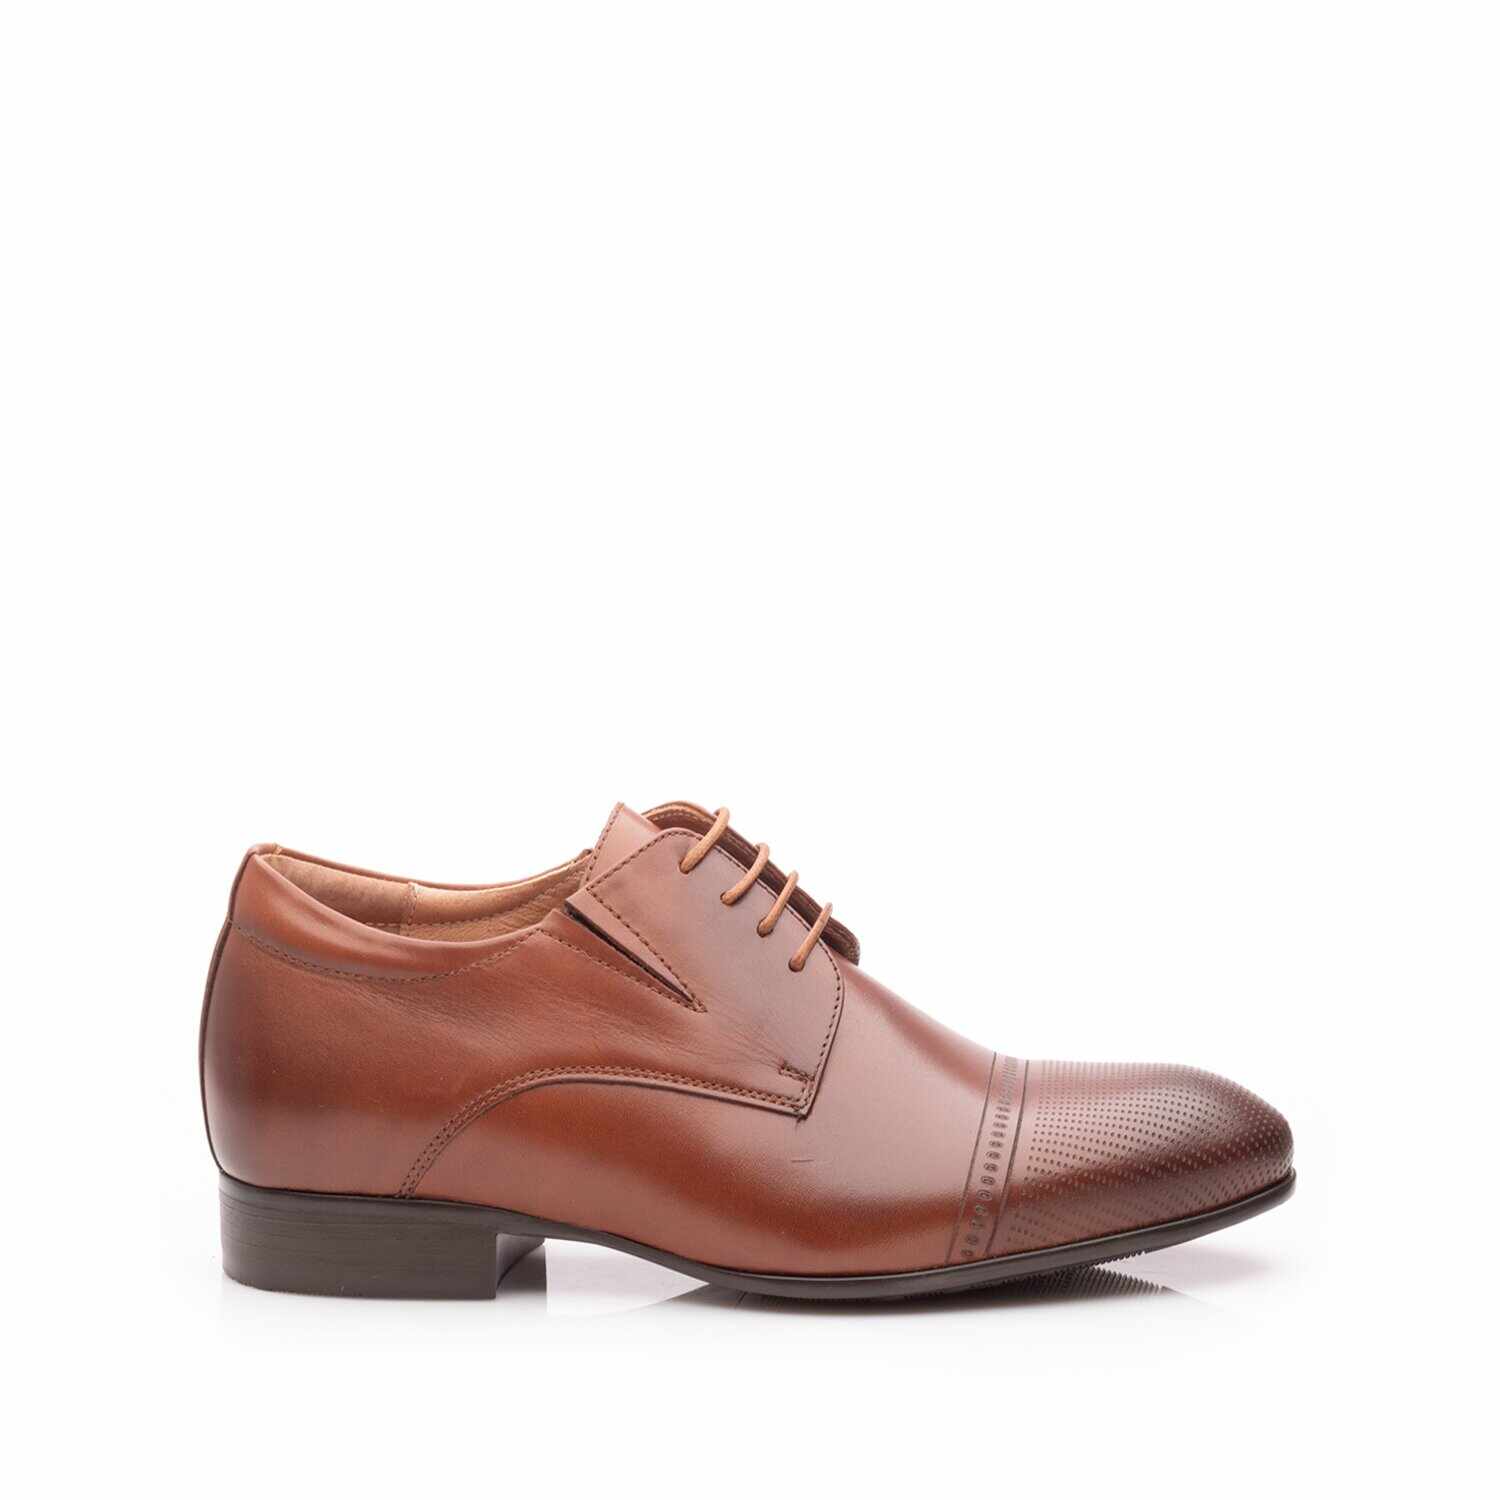 Pantofi eleganţi bărbaţi din piele naturală, Leofex - 522 Cognac box